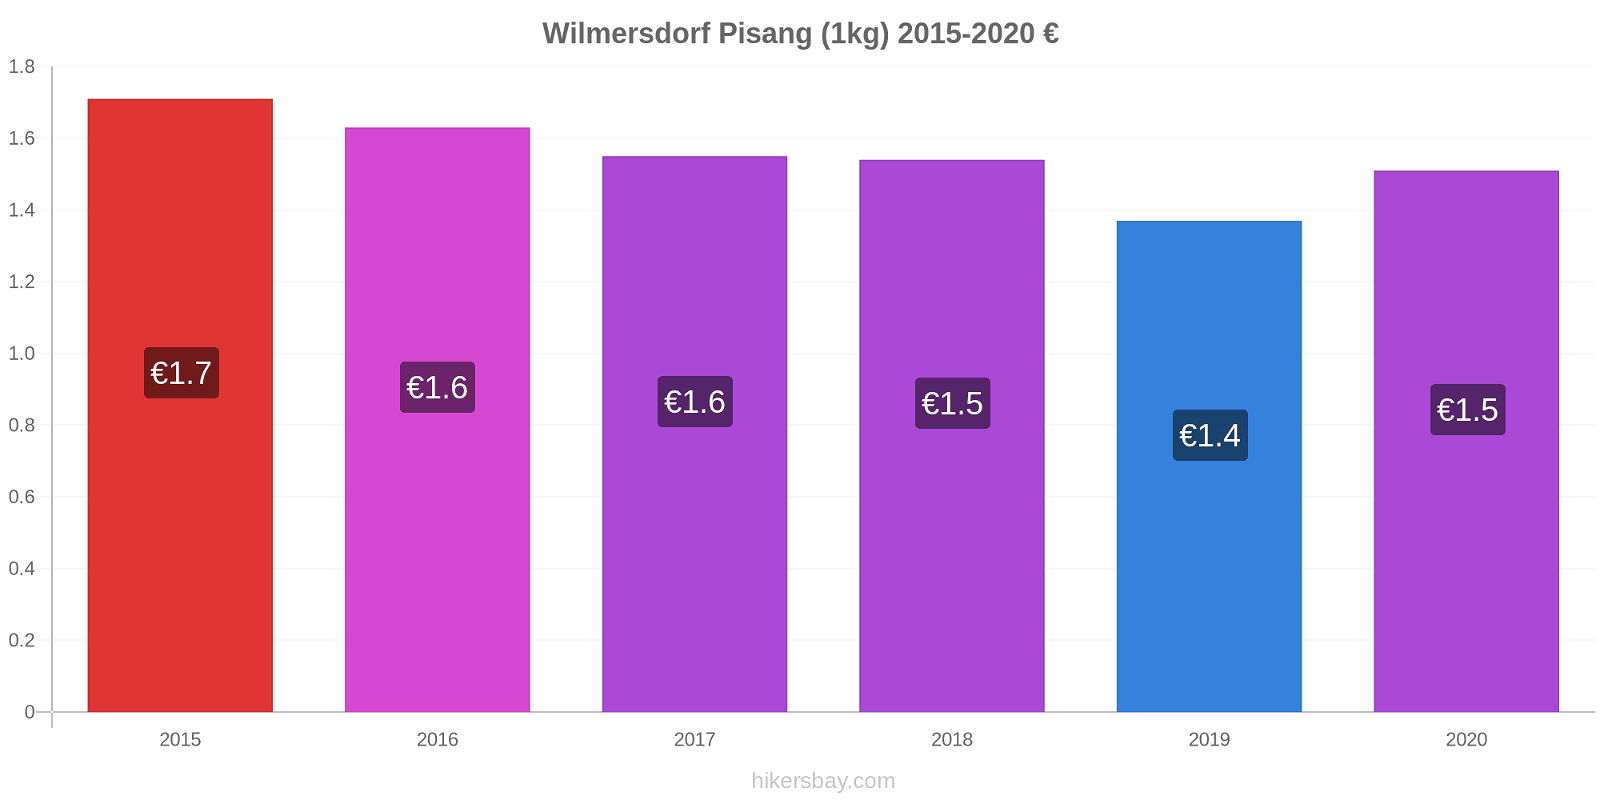 Wilmersdorf perubahan harga Pisang (1kg) hikersbay.com